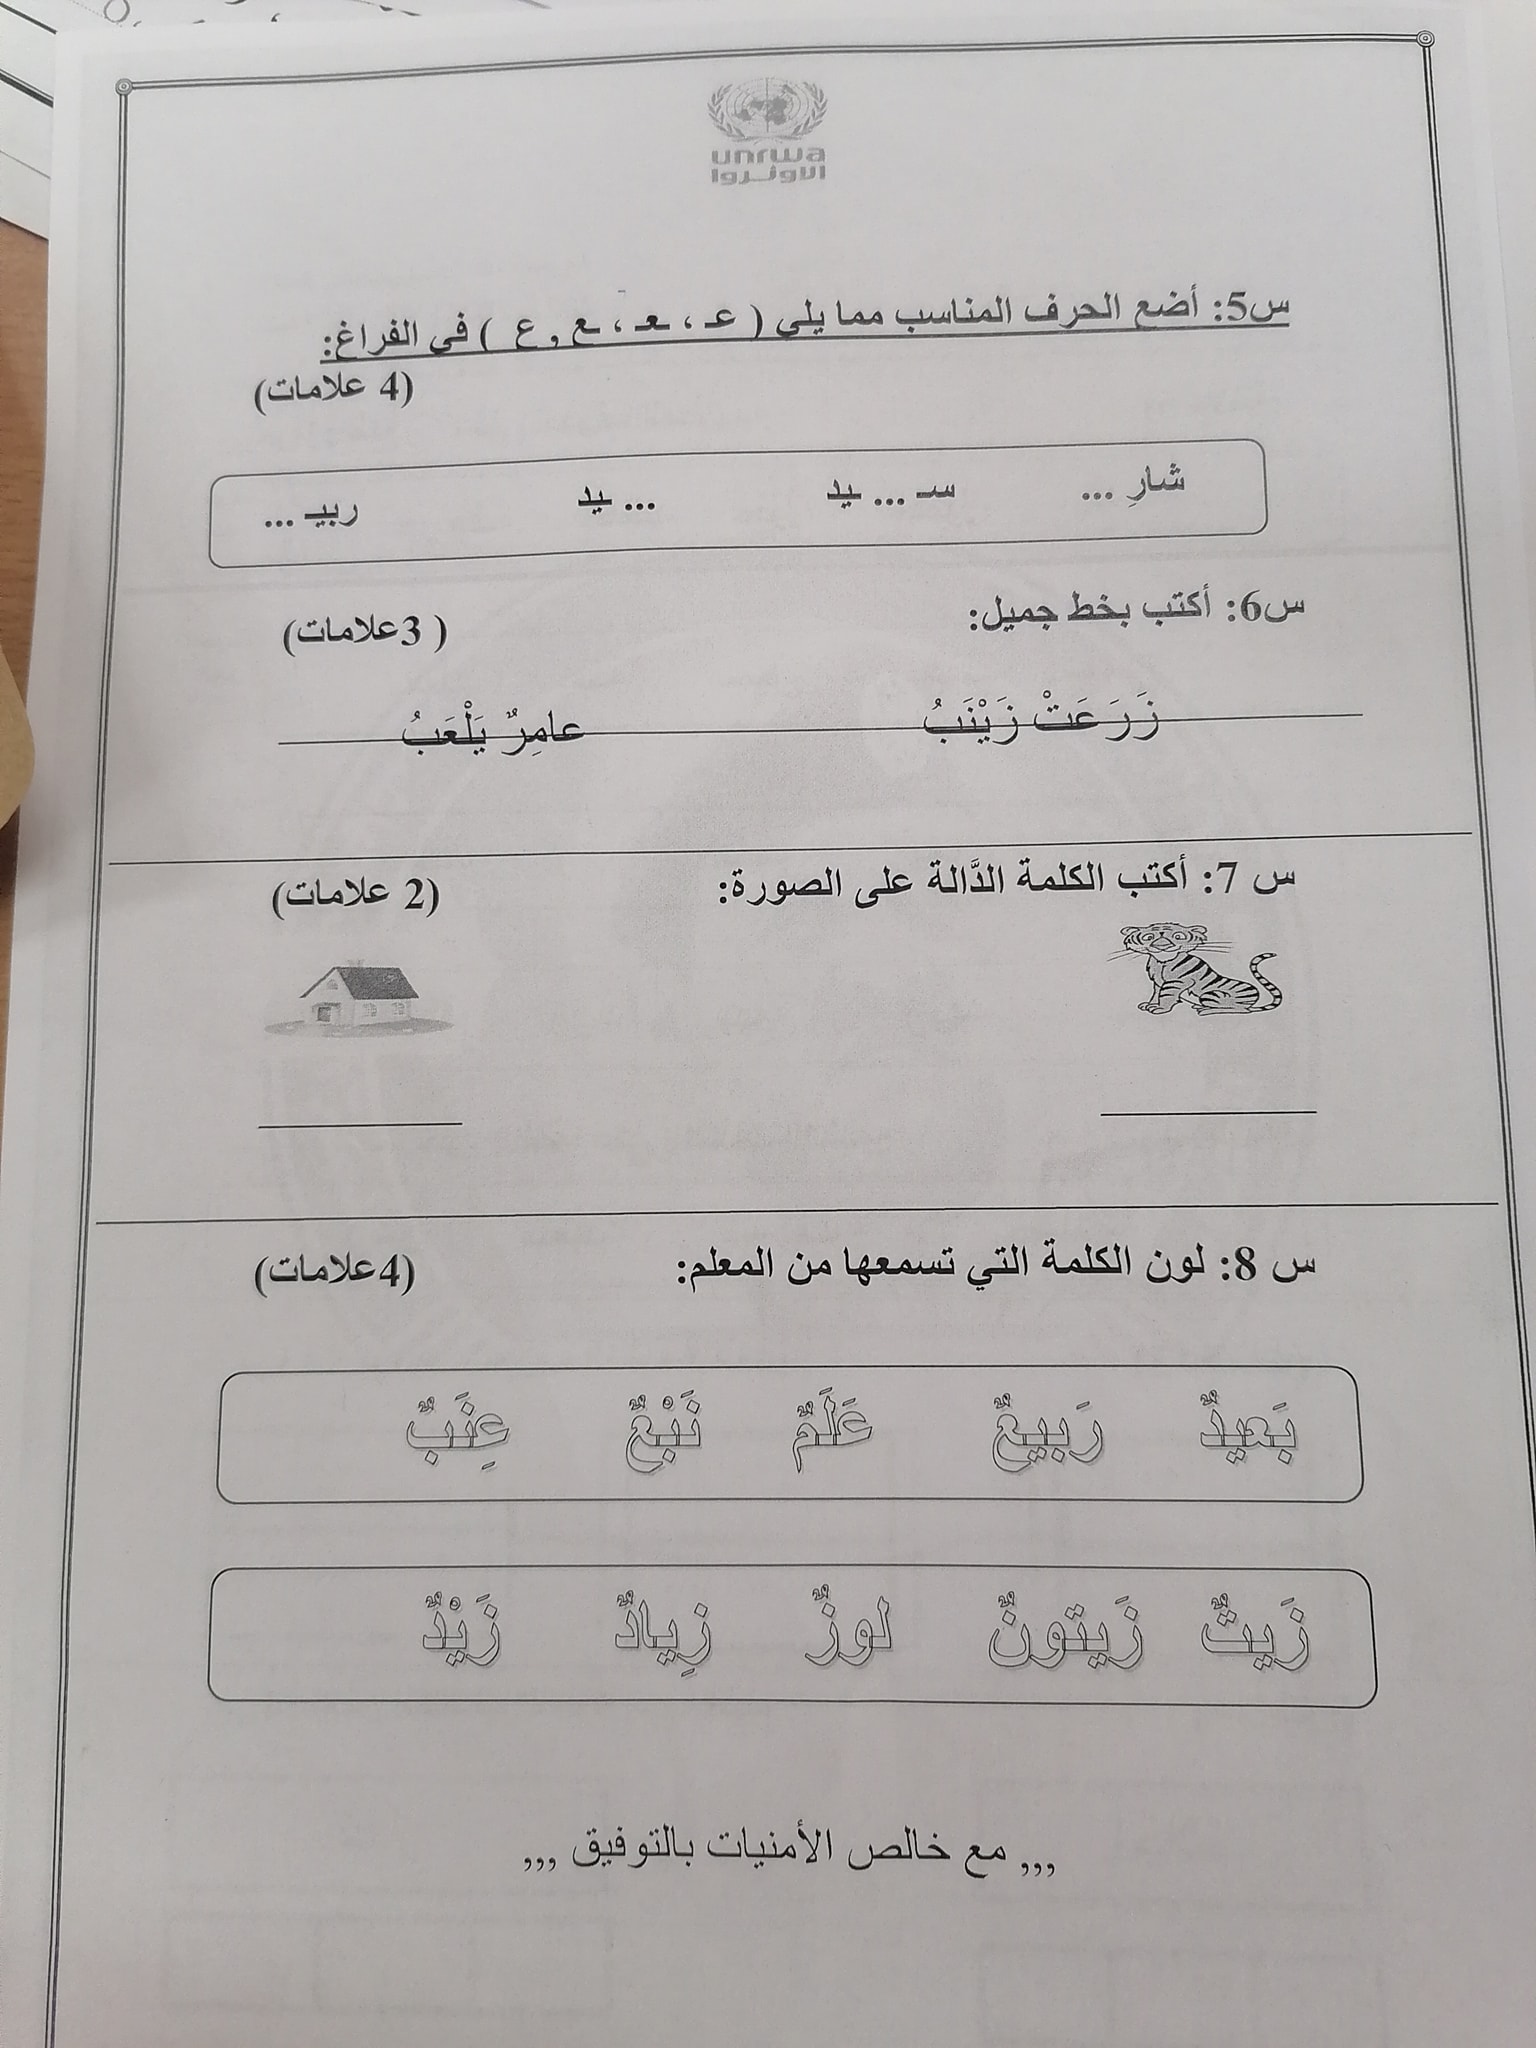 2 بالصور امتحان لغة عربية نهائي للصف الاول الفصل الاول 2021.jpg